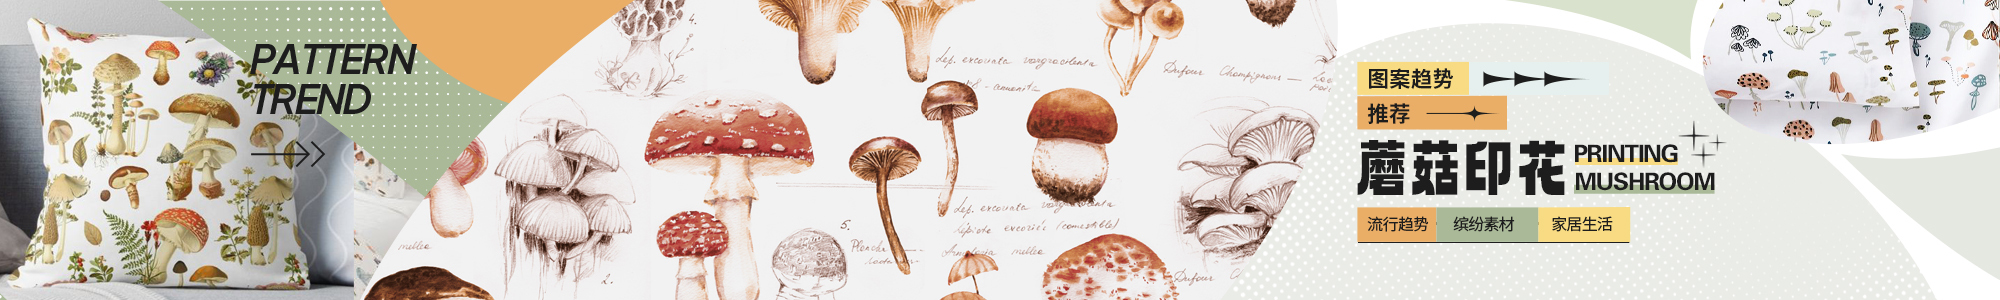 蘑菇印花图案推荐